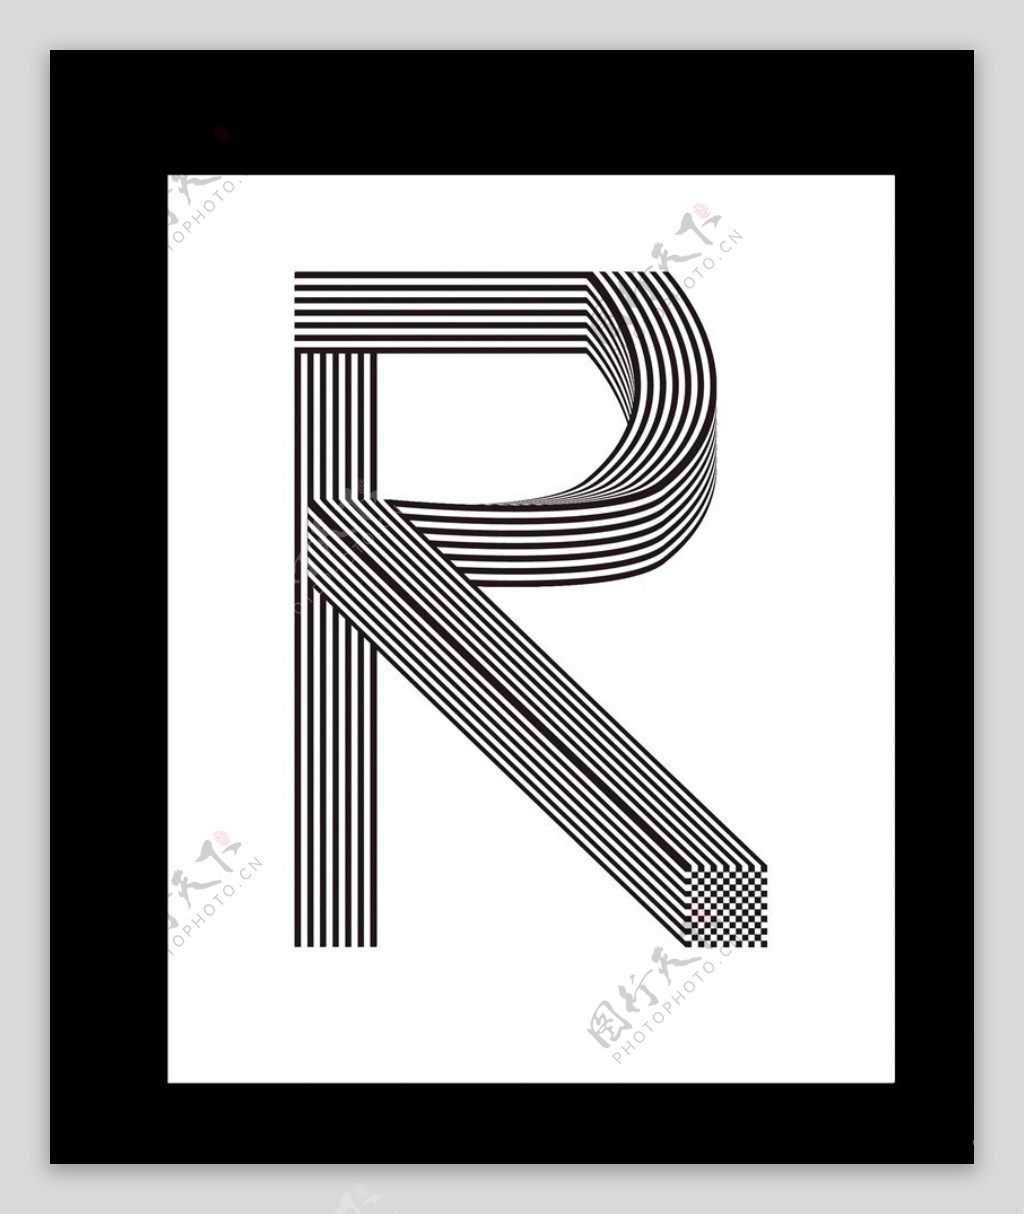 Rr字母创意设计创意字体